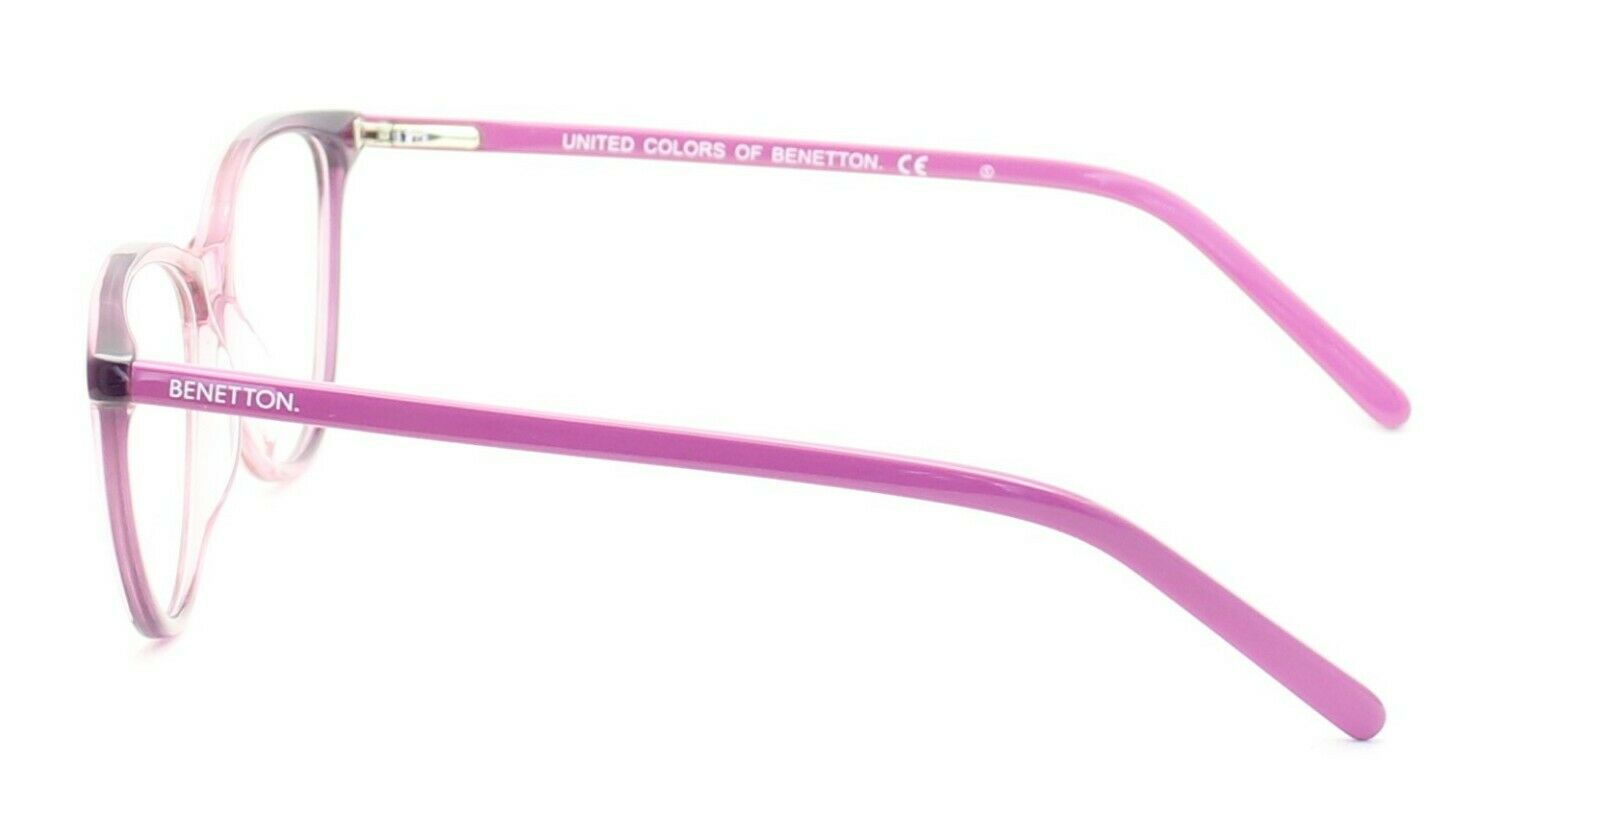 BENETTON BN426V03 52mm Eyewear FRAMES Glasses Eyeglasses RX Optical New TRUSTED